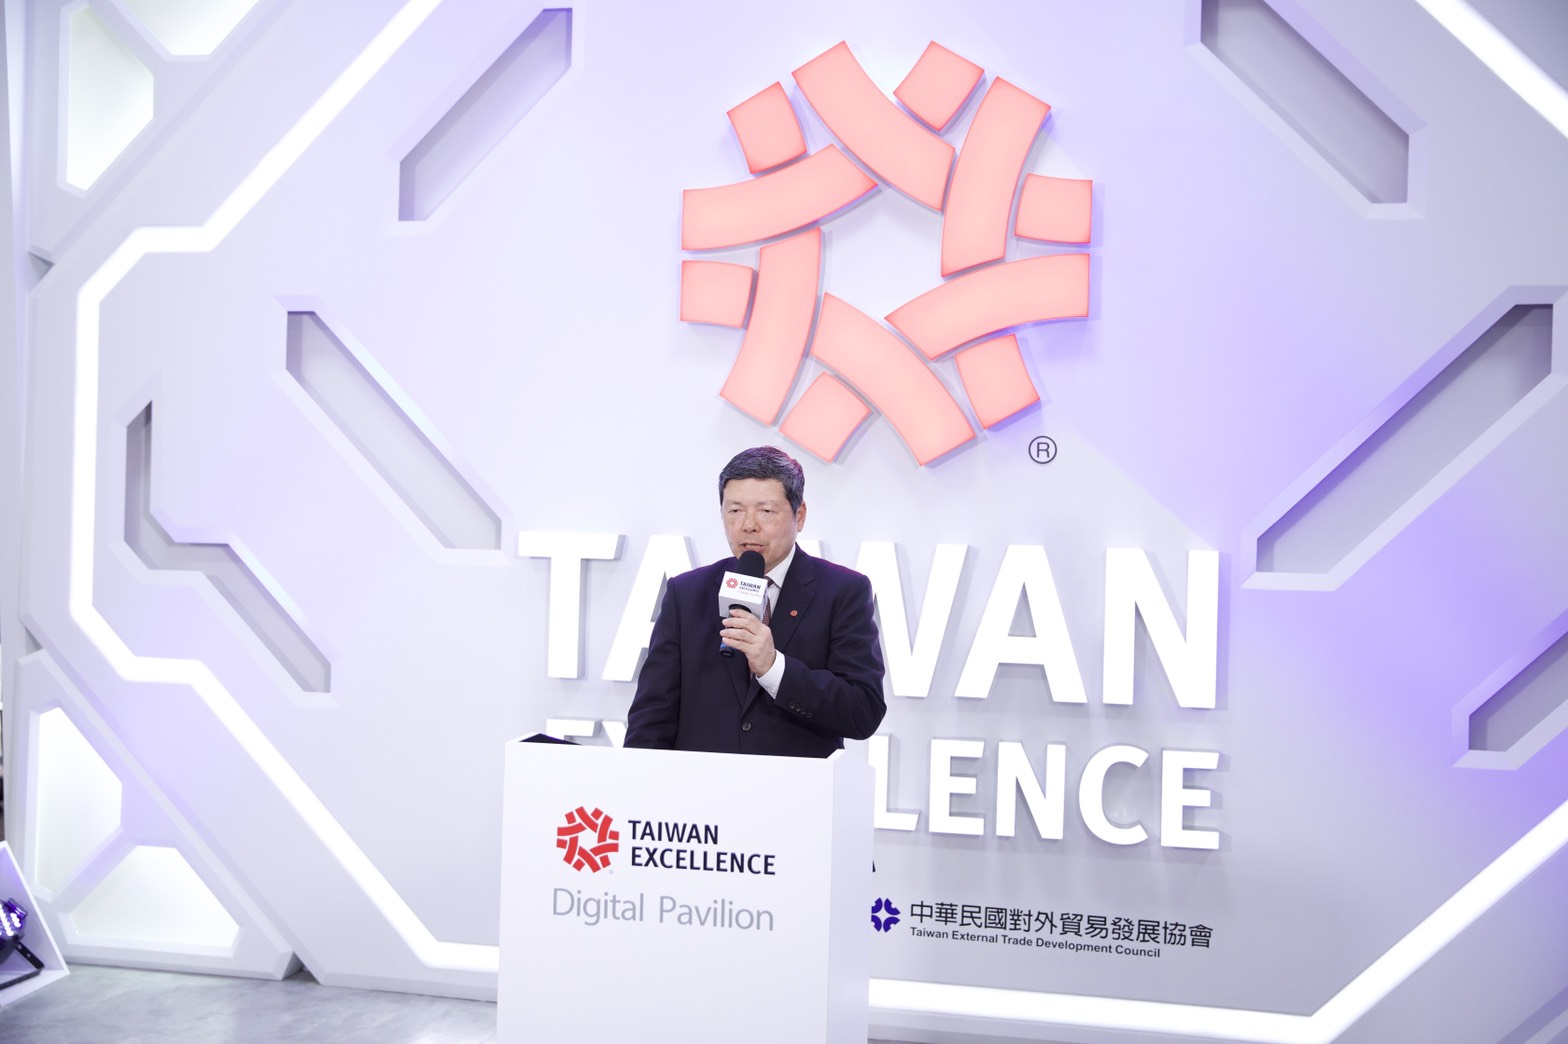 Giải pháp máy móc thông minh từ Đài Loan giúp tăng độ an toàn và giảm tác động của con người trong ngành sản xuất chế tạo